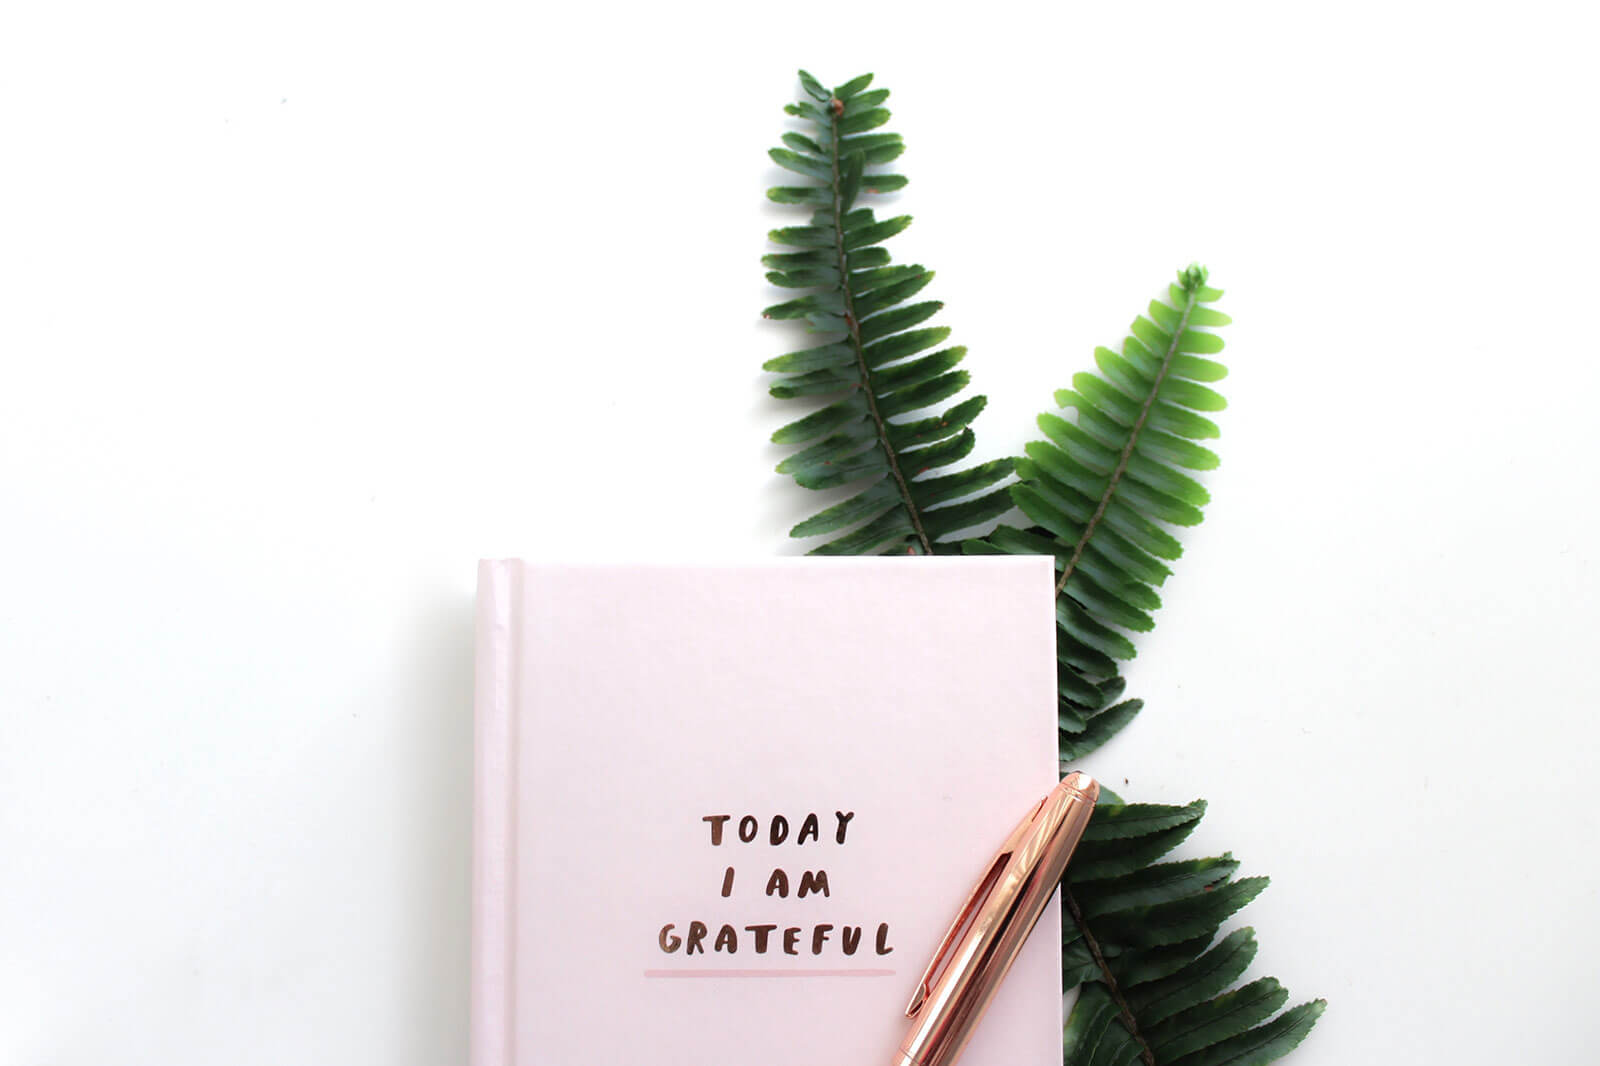 Livro "Today I am grateful" com caneta sobre ramo de folhas